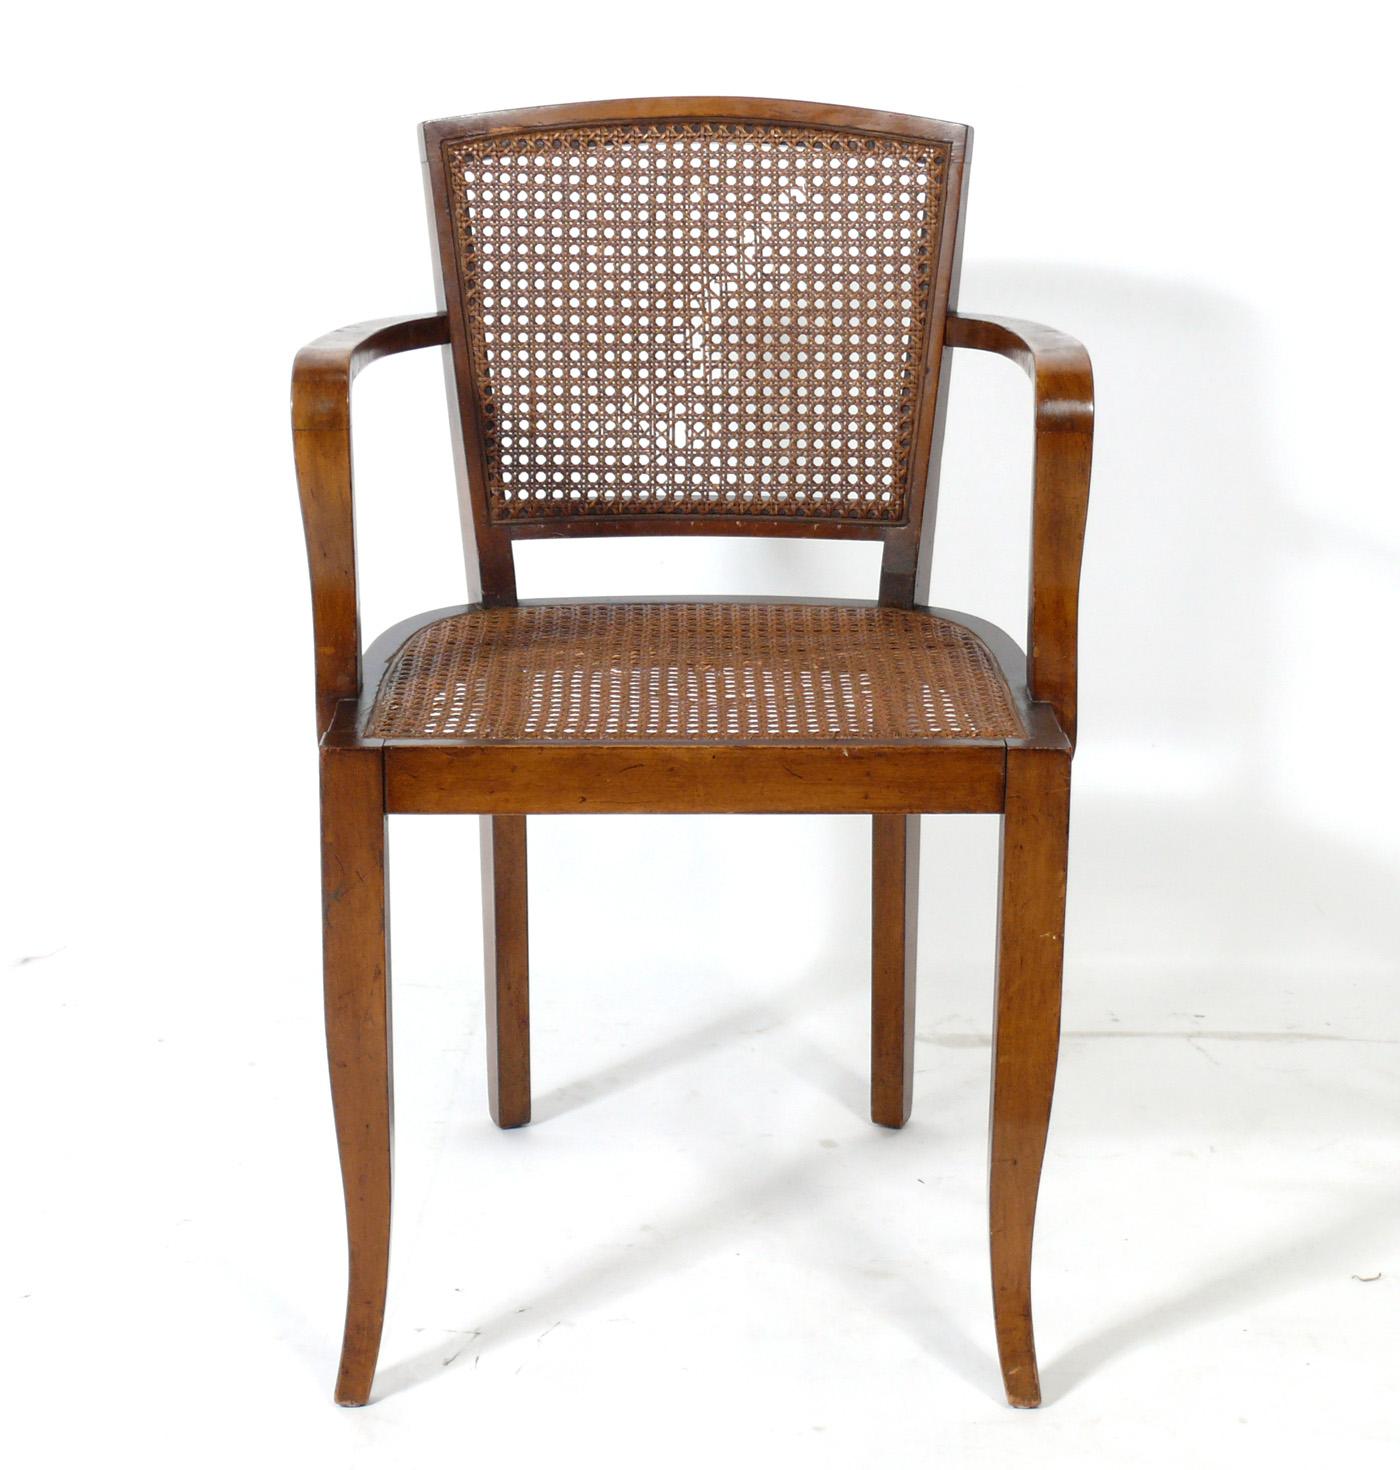 Chaises de salle à manger Art déco, France, vers les années 1930. Ces chaises sont actuellement en cours de restauration complète et peuvent être réalisées dans la couleur de finition de votre choix. Nous pouvons refaire le cannage ou le rembourrage